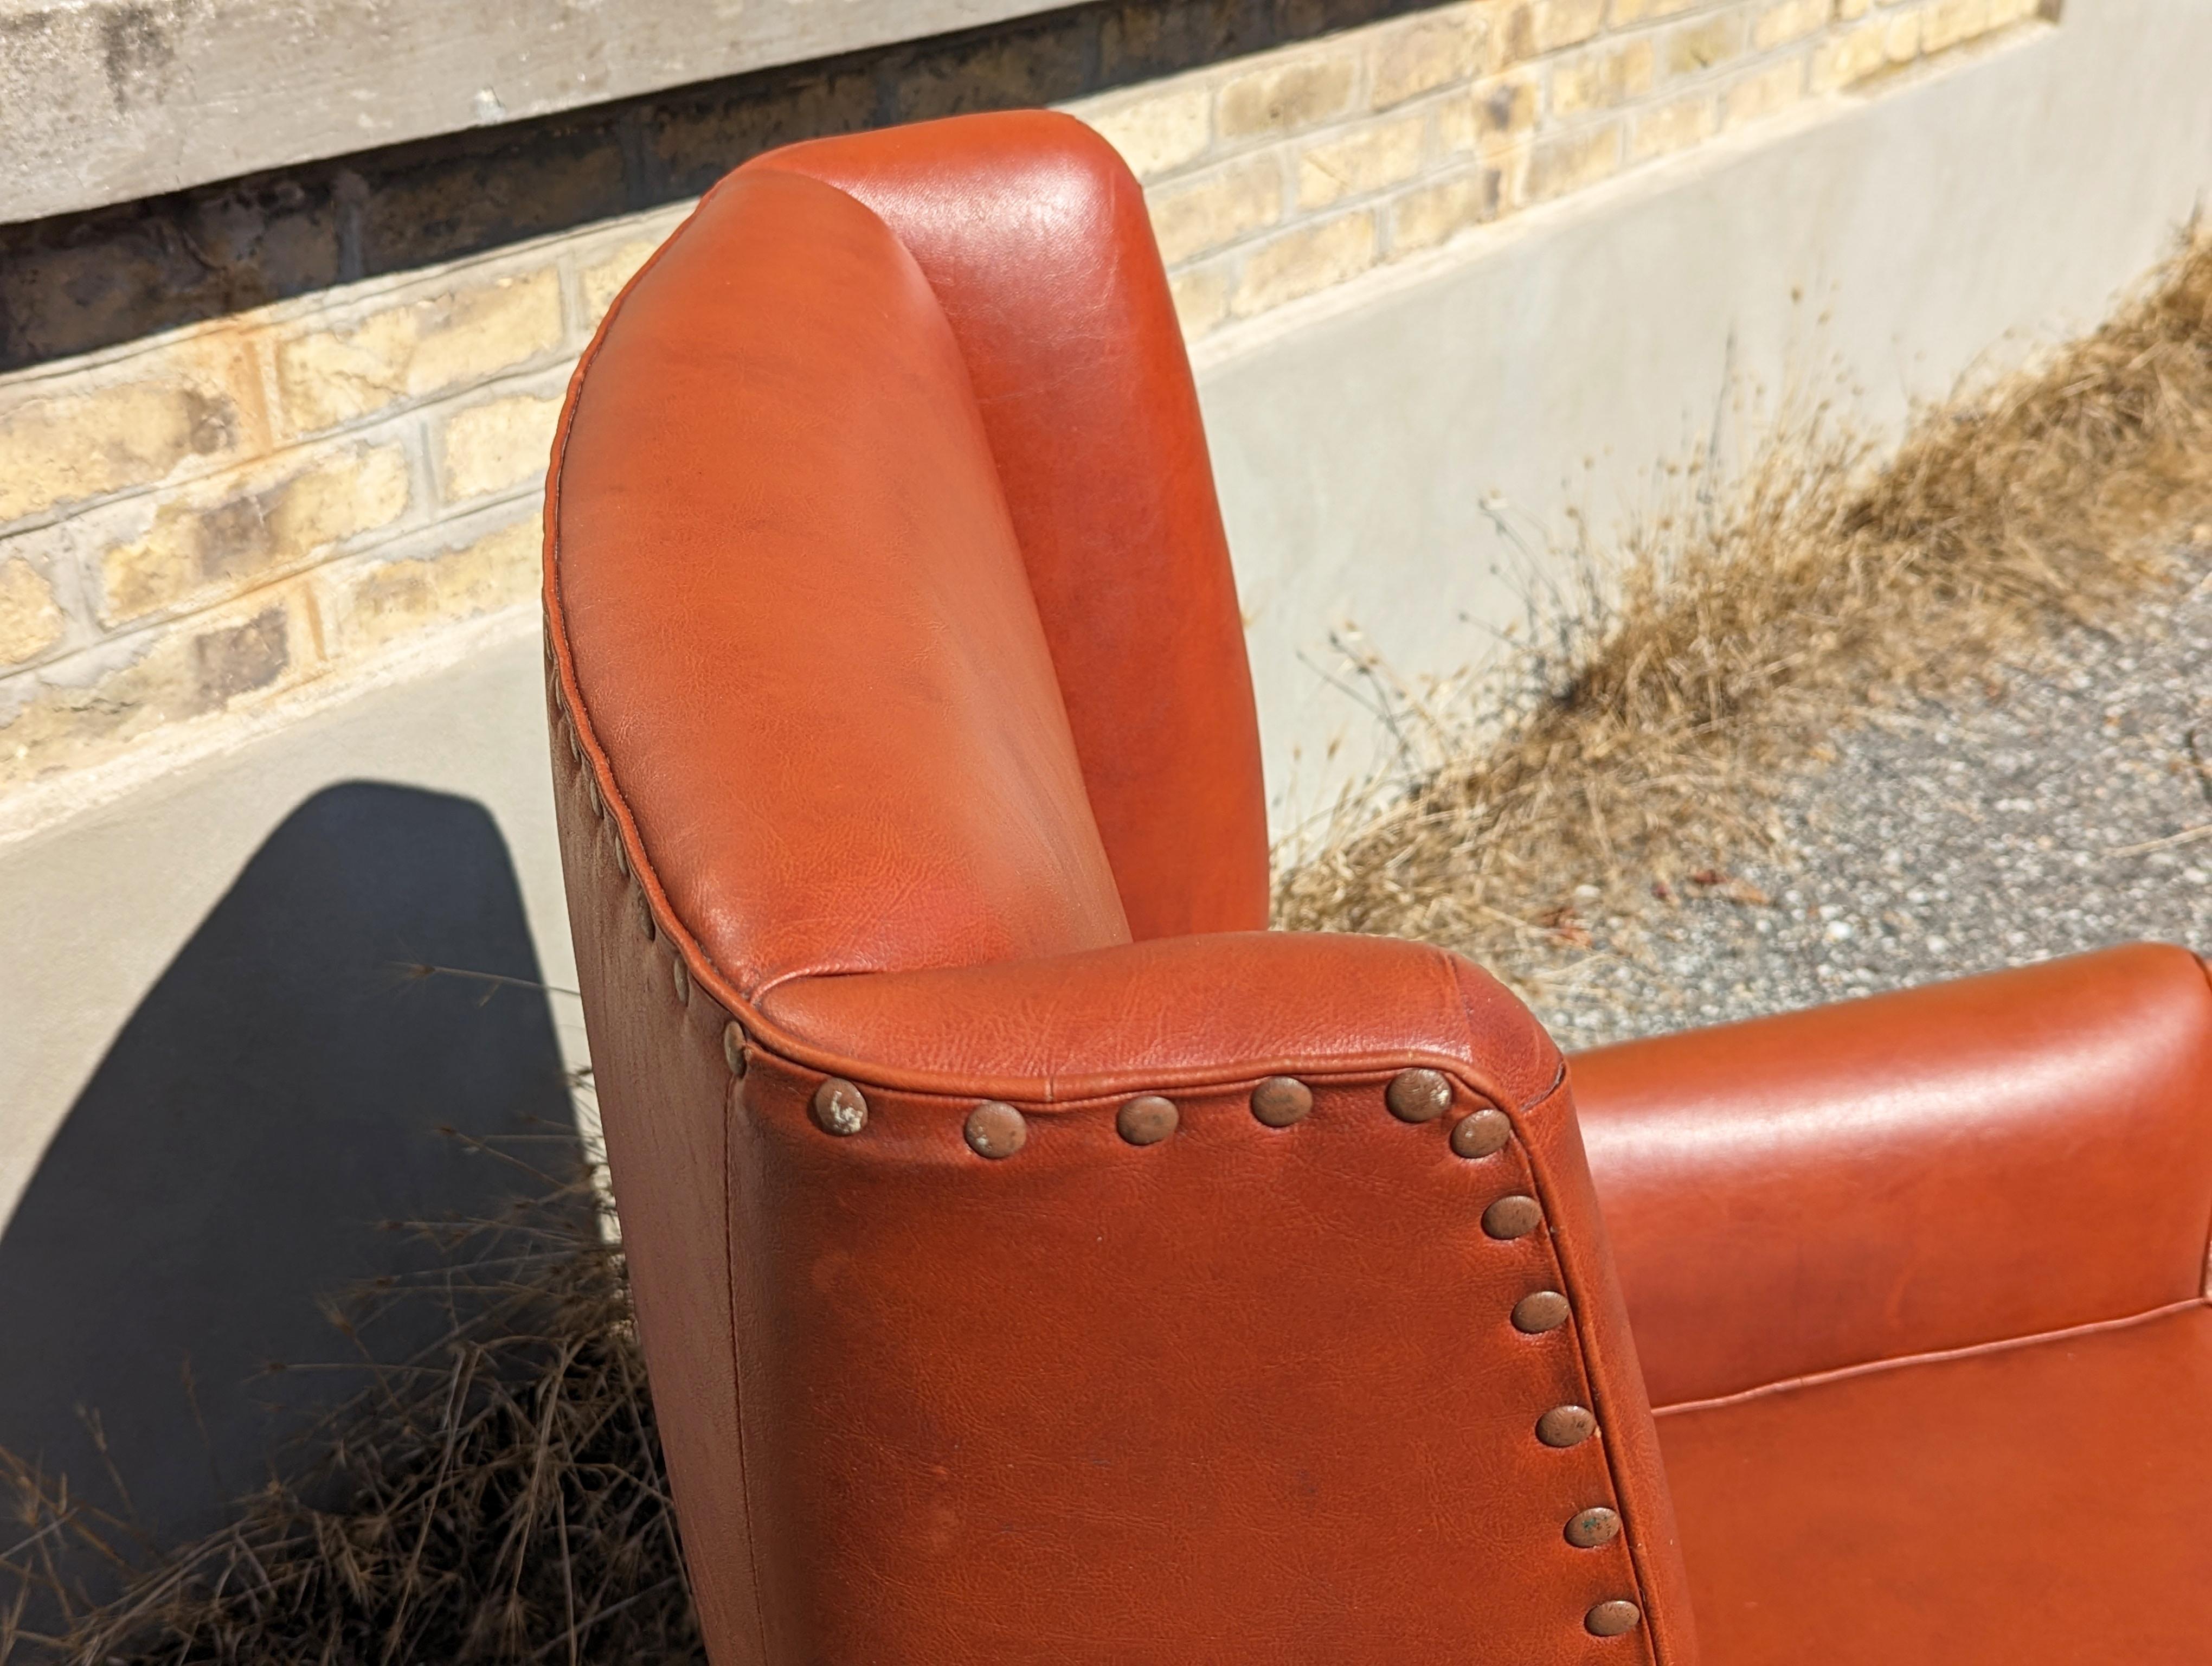 Ce fauteuil a été produit en Italie dans les années 1950. Il est fabriqué à partir de  Structure en bois et revêtement en skaï rouge brique. L'état extérieur est moyen car la sellerie en skaï présente des défauts visibles comme indiqué sur les